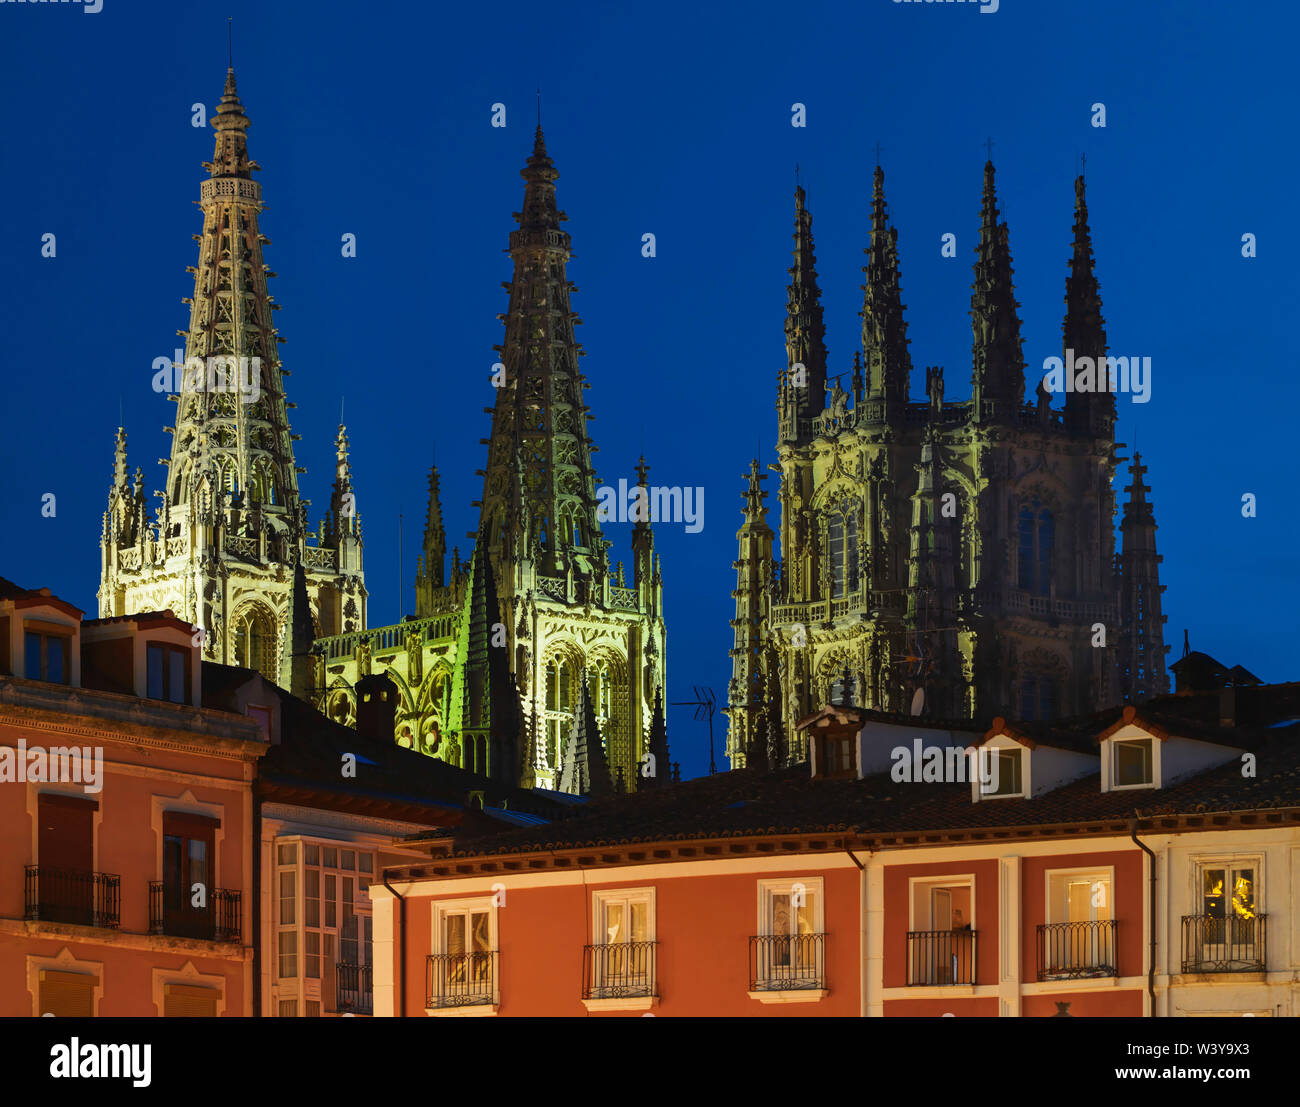 España, Castilla y León, Burgos, la Plaza Mayor y la de Santa María de la catedral de Burgos de noche, sitio del Patrimonio Mundial de la UNESCO Foto de stock